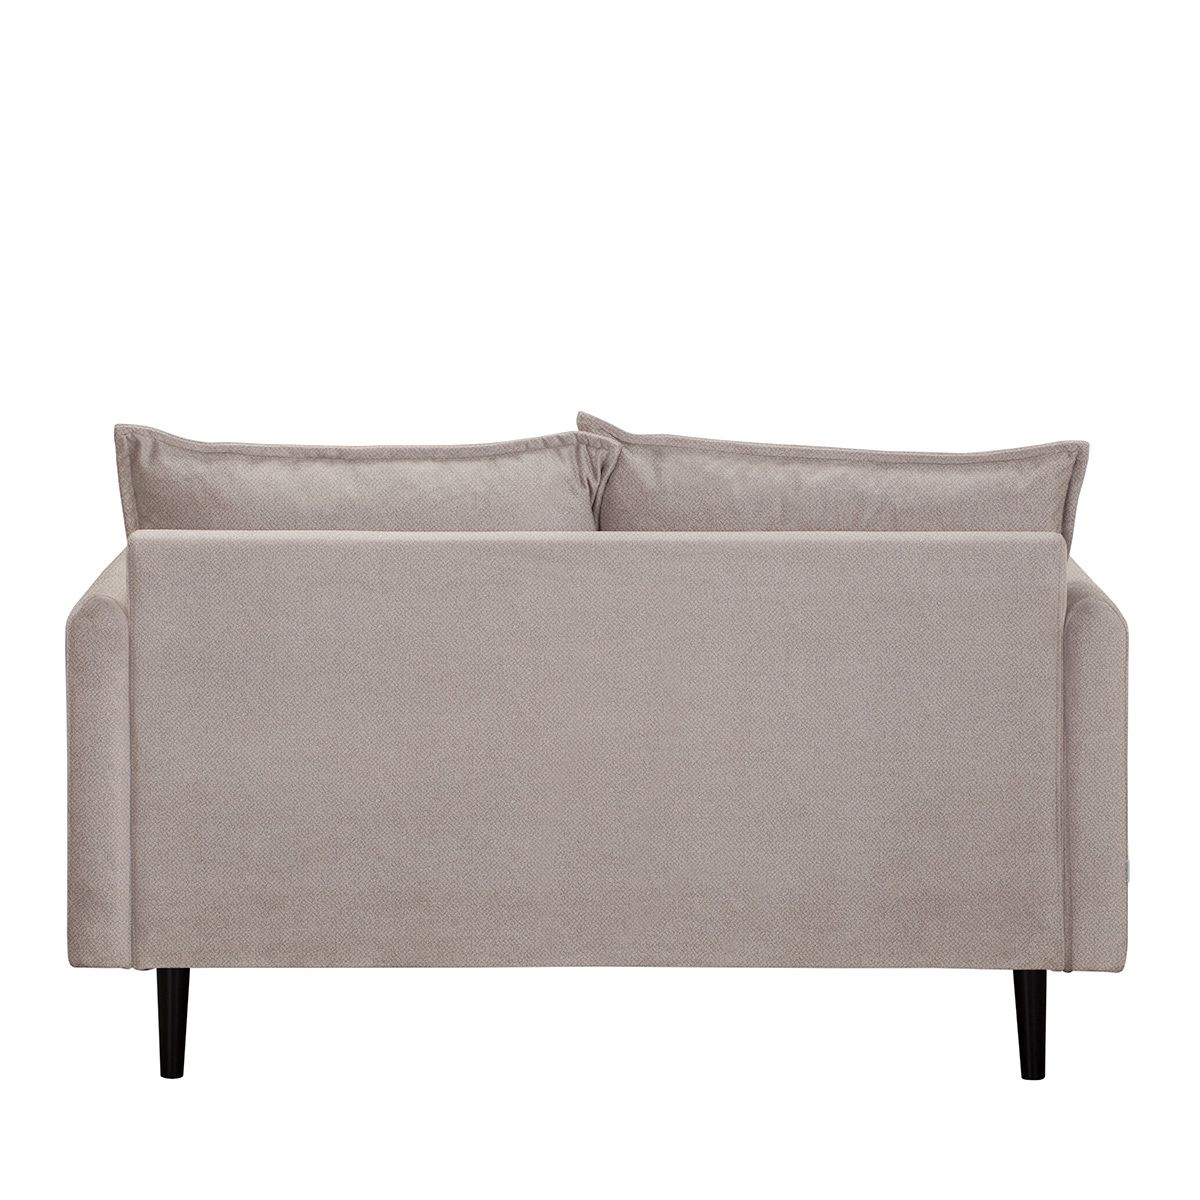 RUGG dīvāns no smilškrāsas auduma, 149x86x91 cm - N1 Home